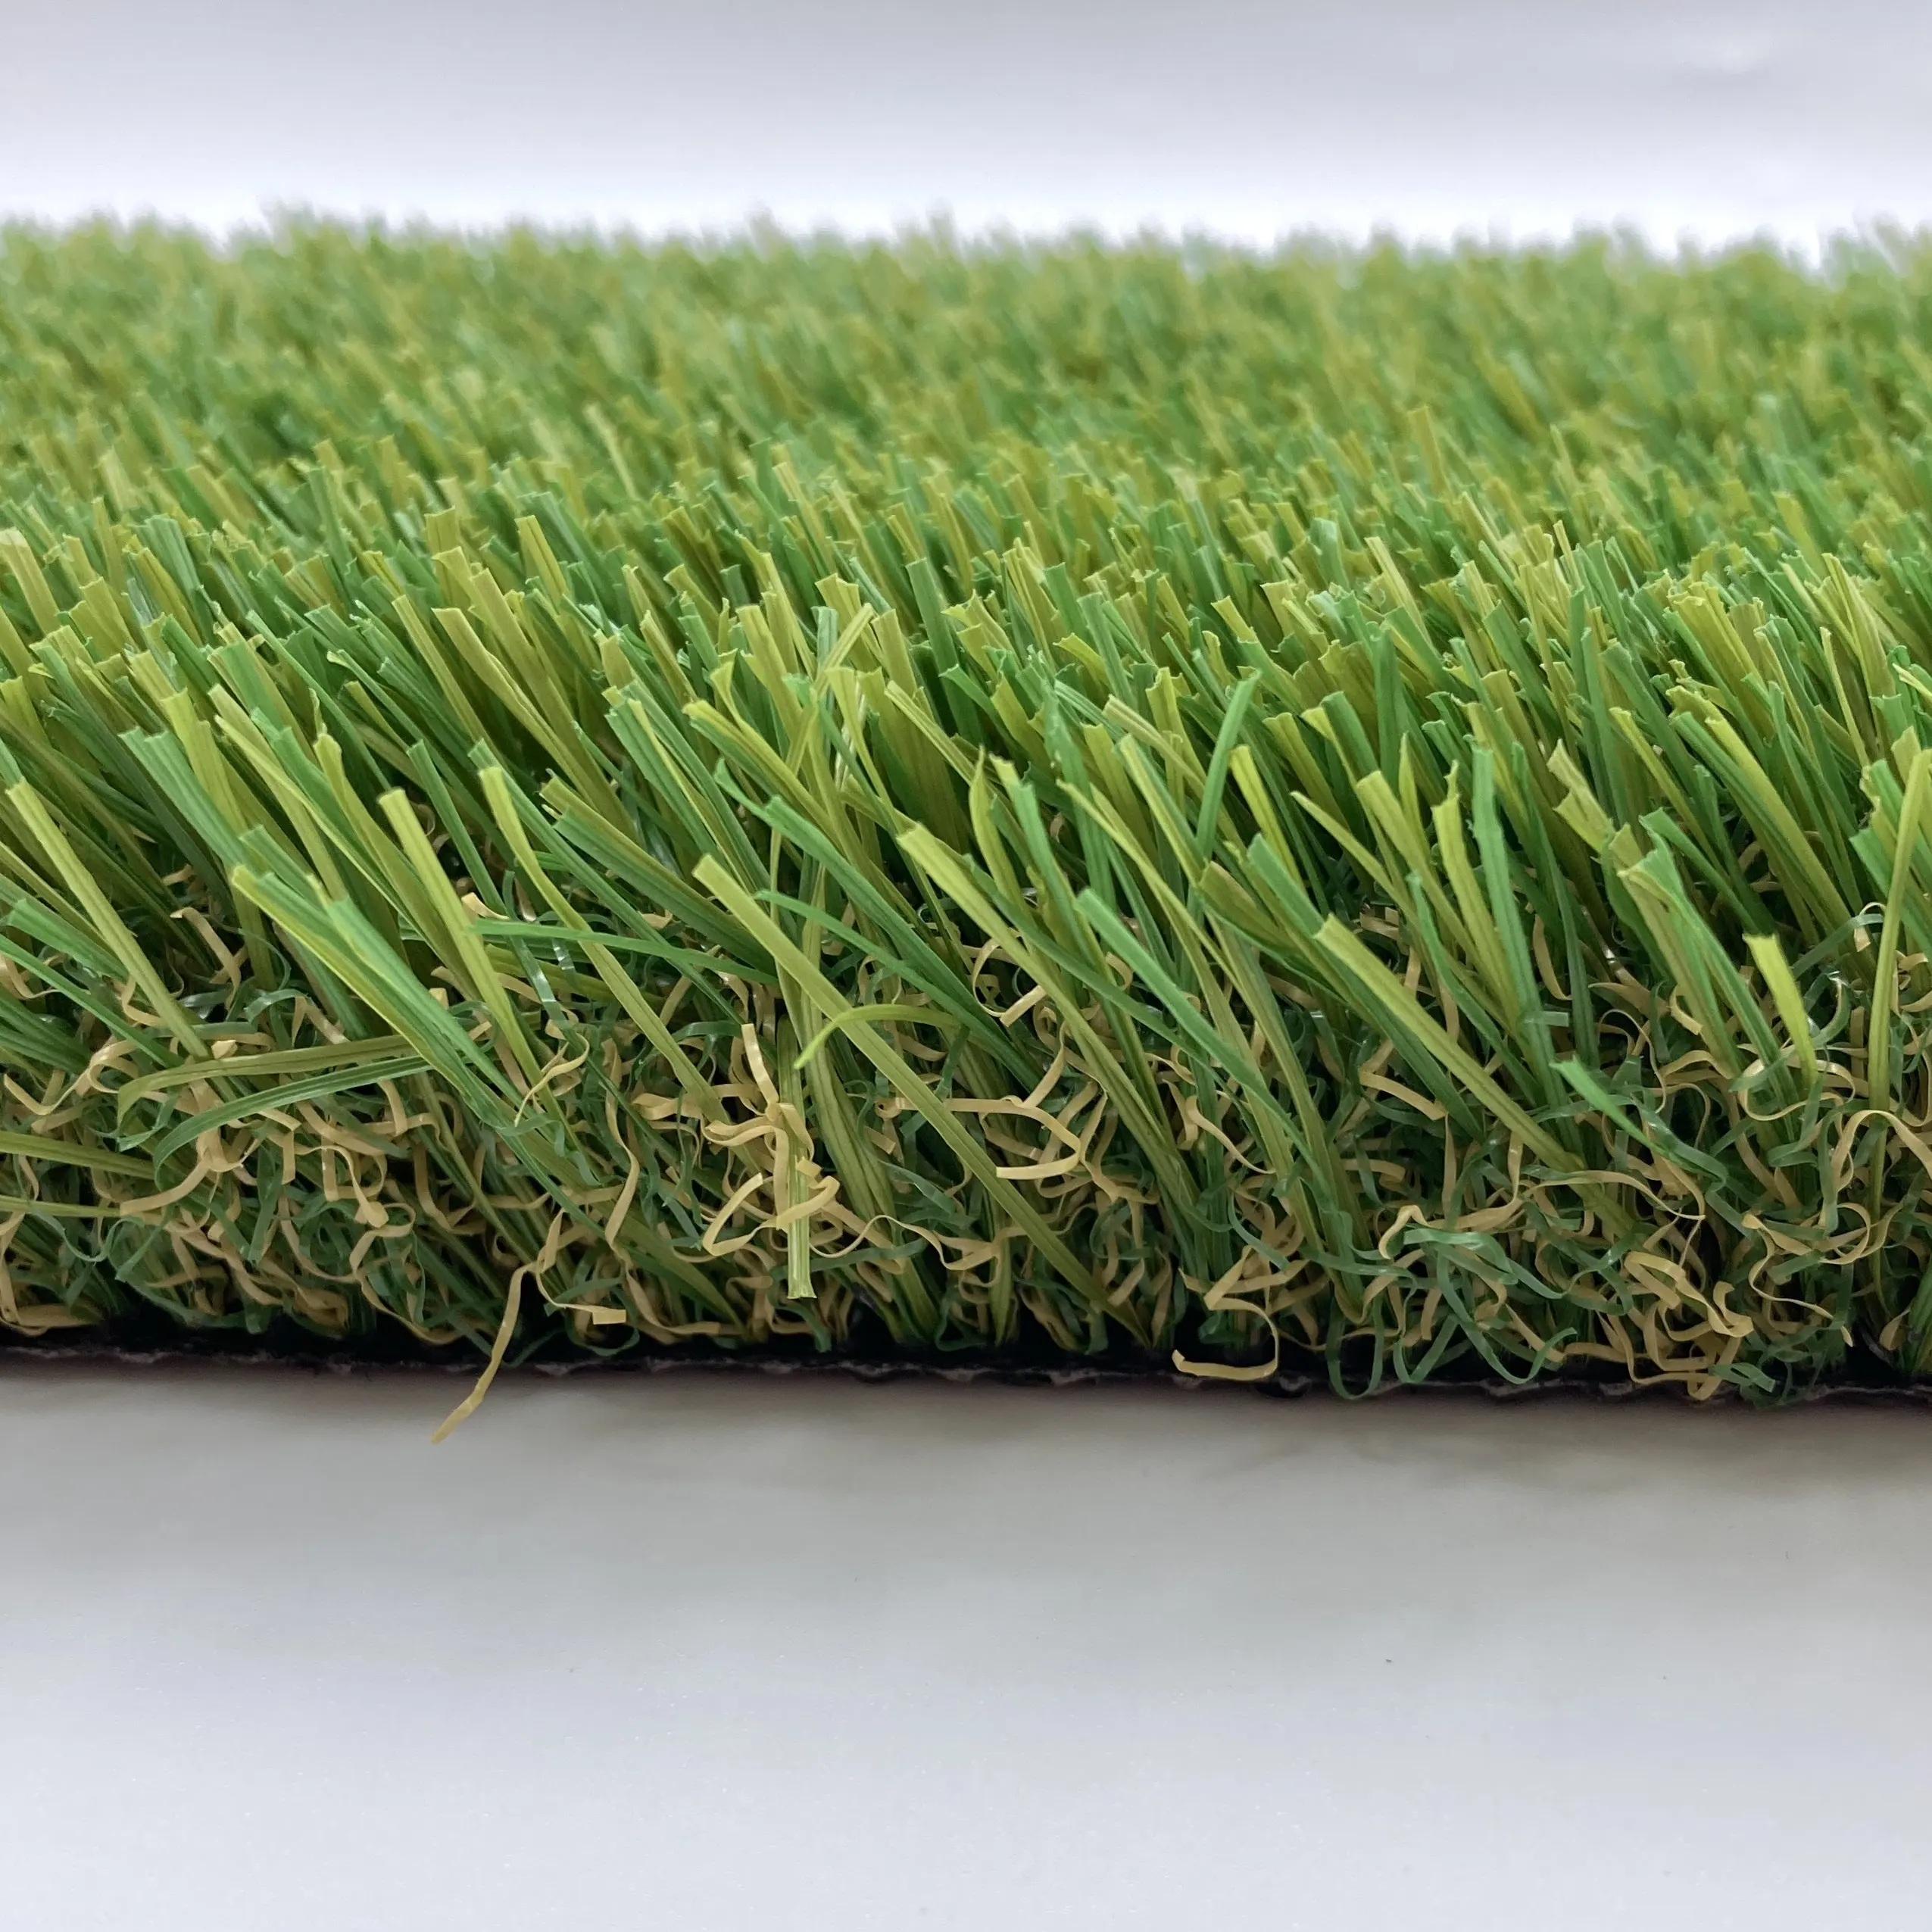 Uni C Shape Four Color Top Quality Artificial Turf Grass Grass Carpet Artificial Outdoor For Home Garden